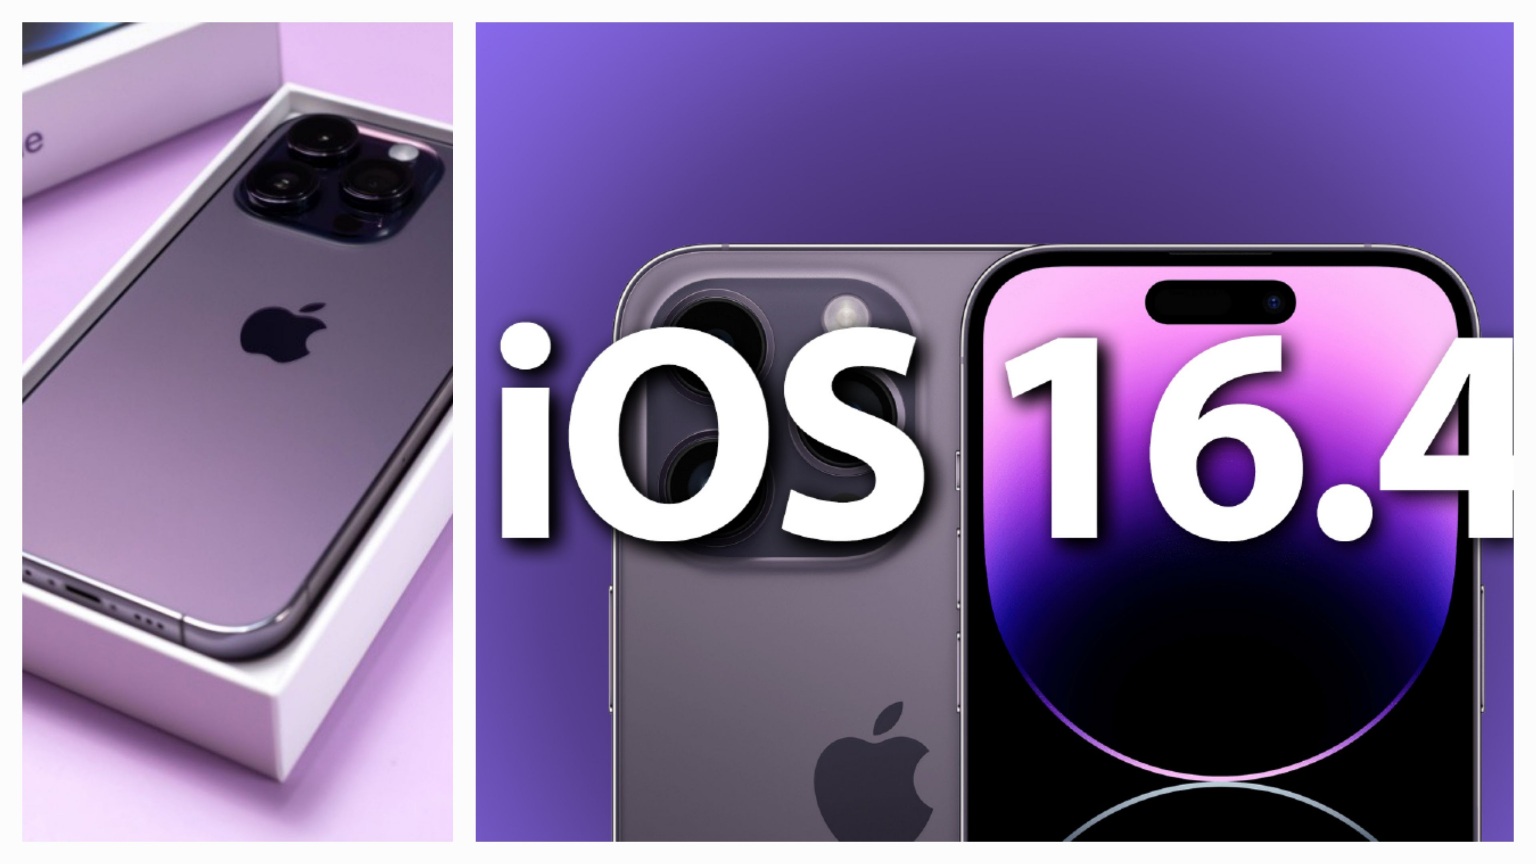 Apple - iOS 16.4